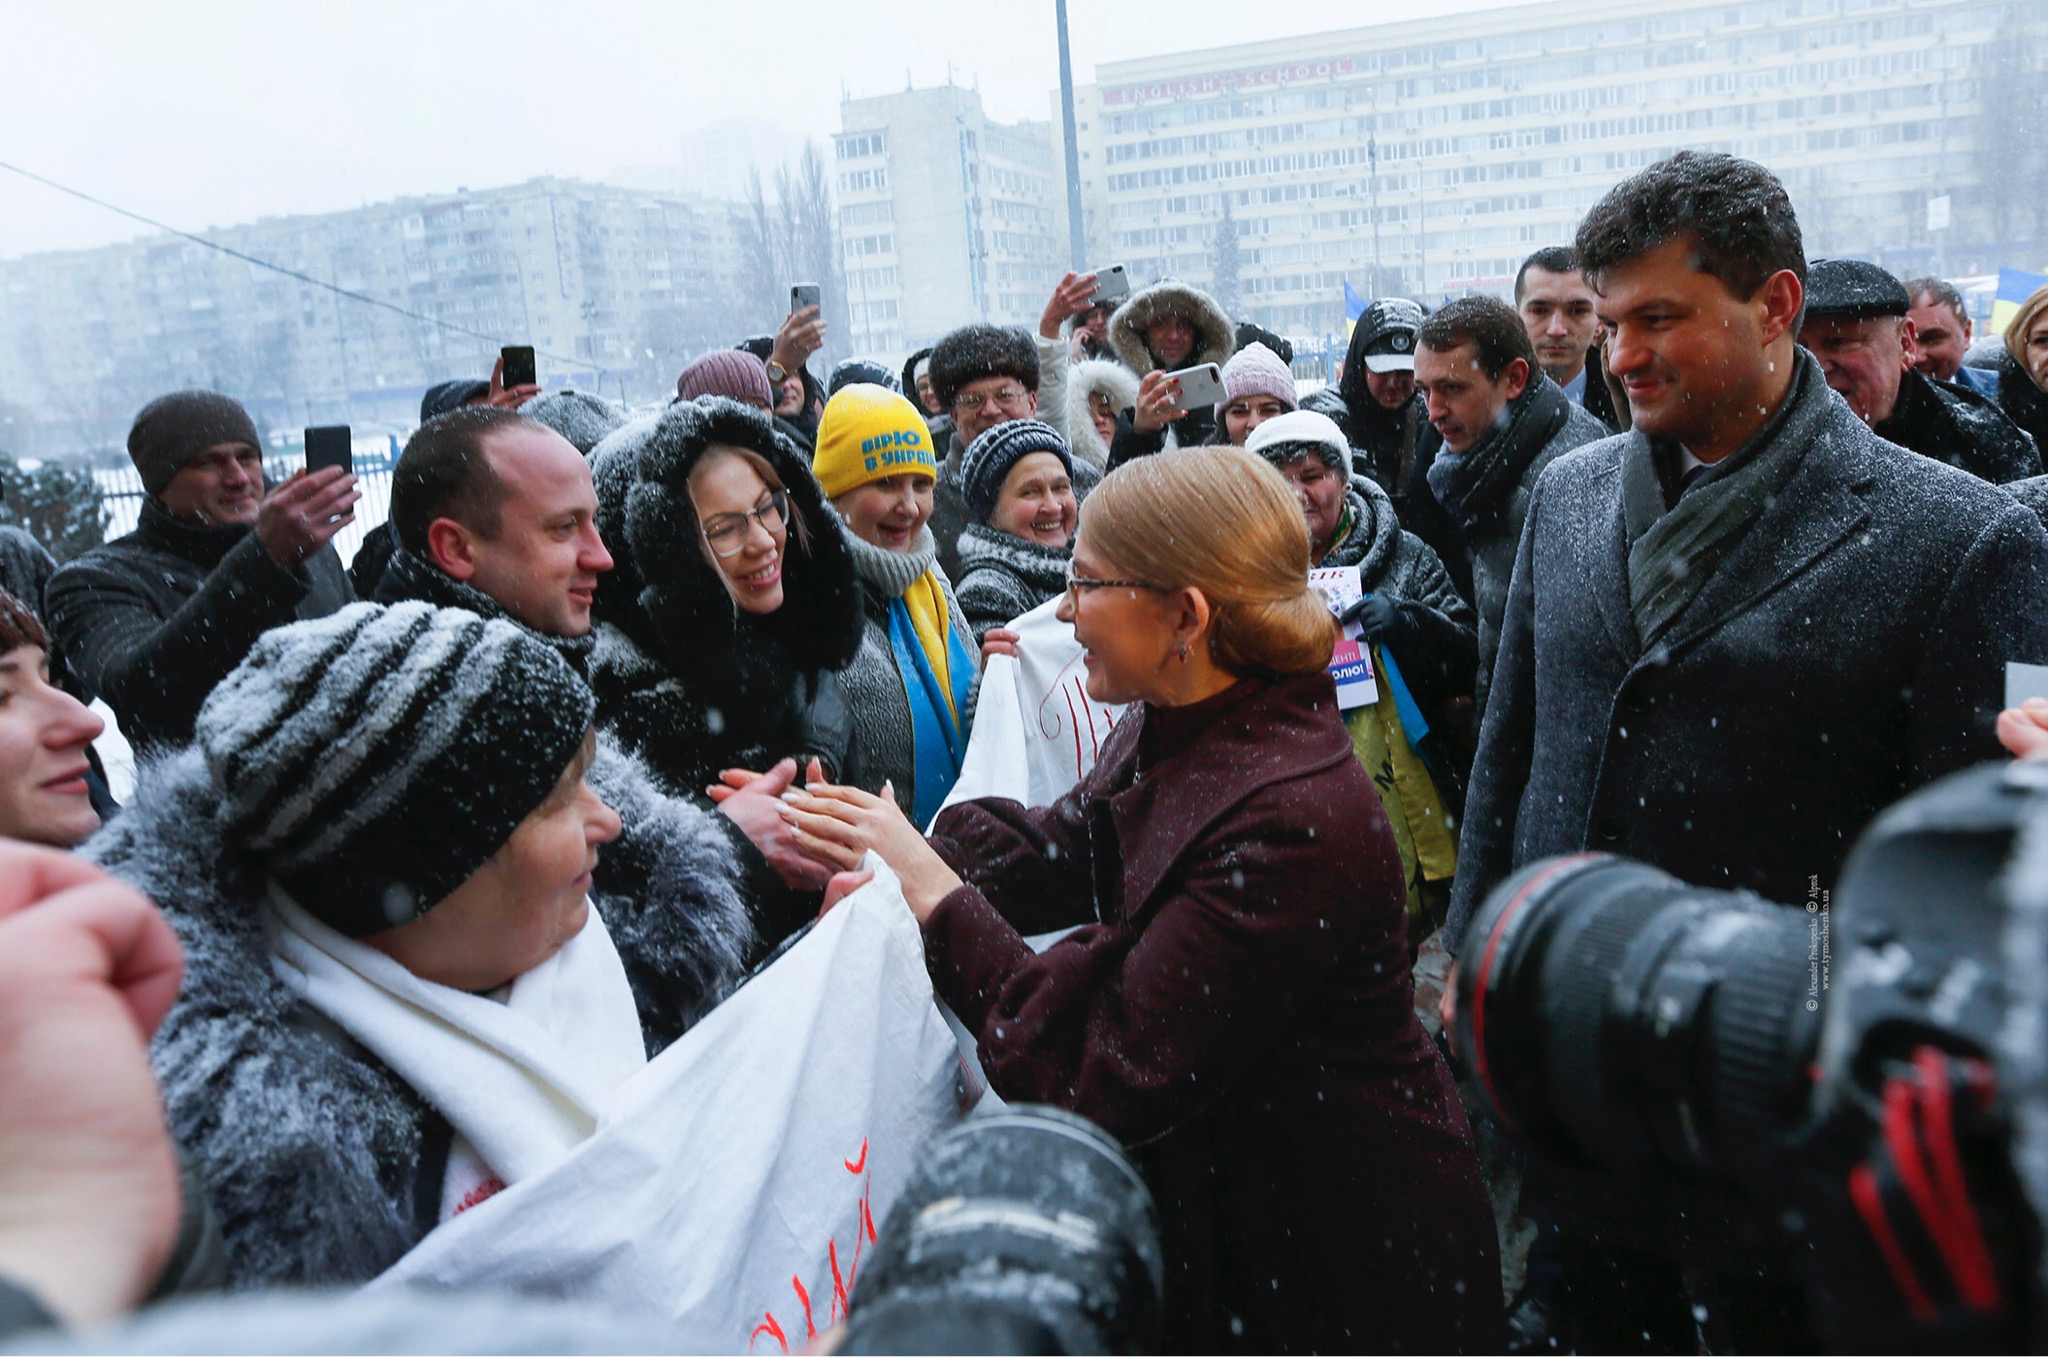 Donbas - Ukraine News. Wednesday 23 January. [Ukrainian sources] 7b974e2f6b2c5c34fb3dc2f038219fa8